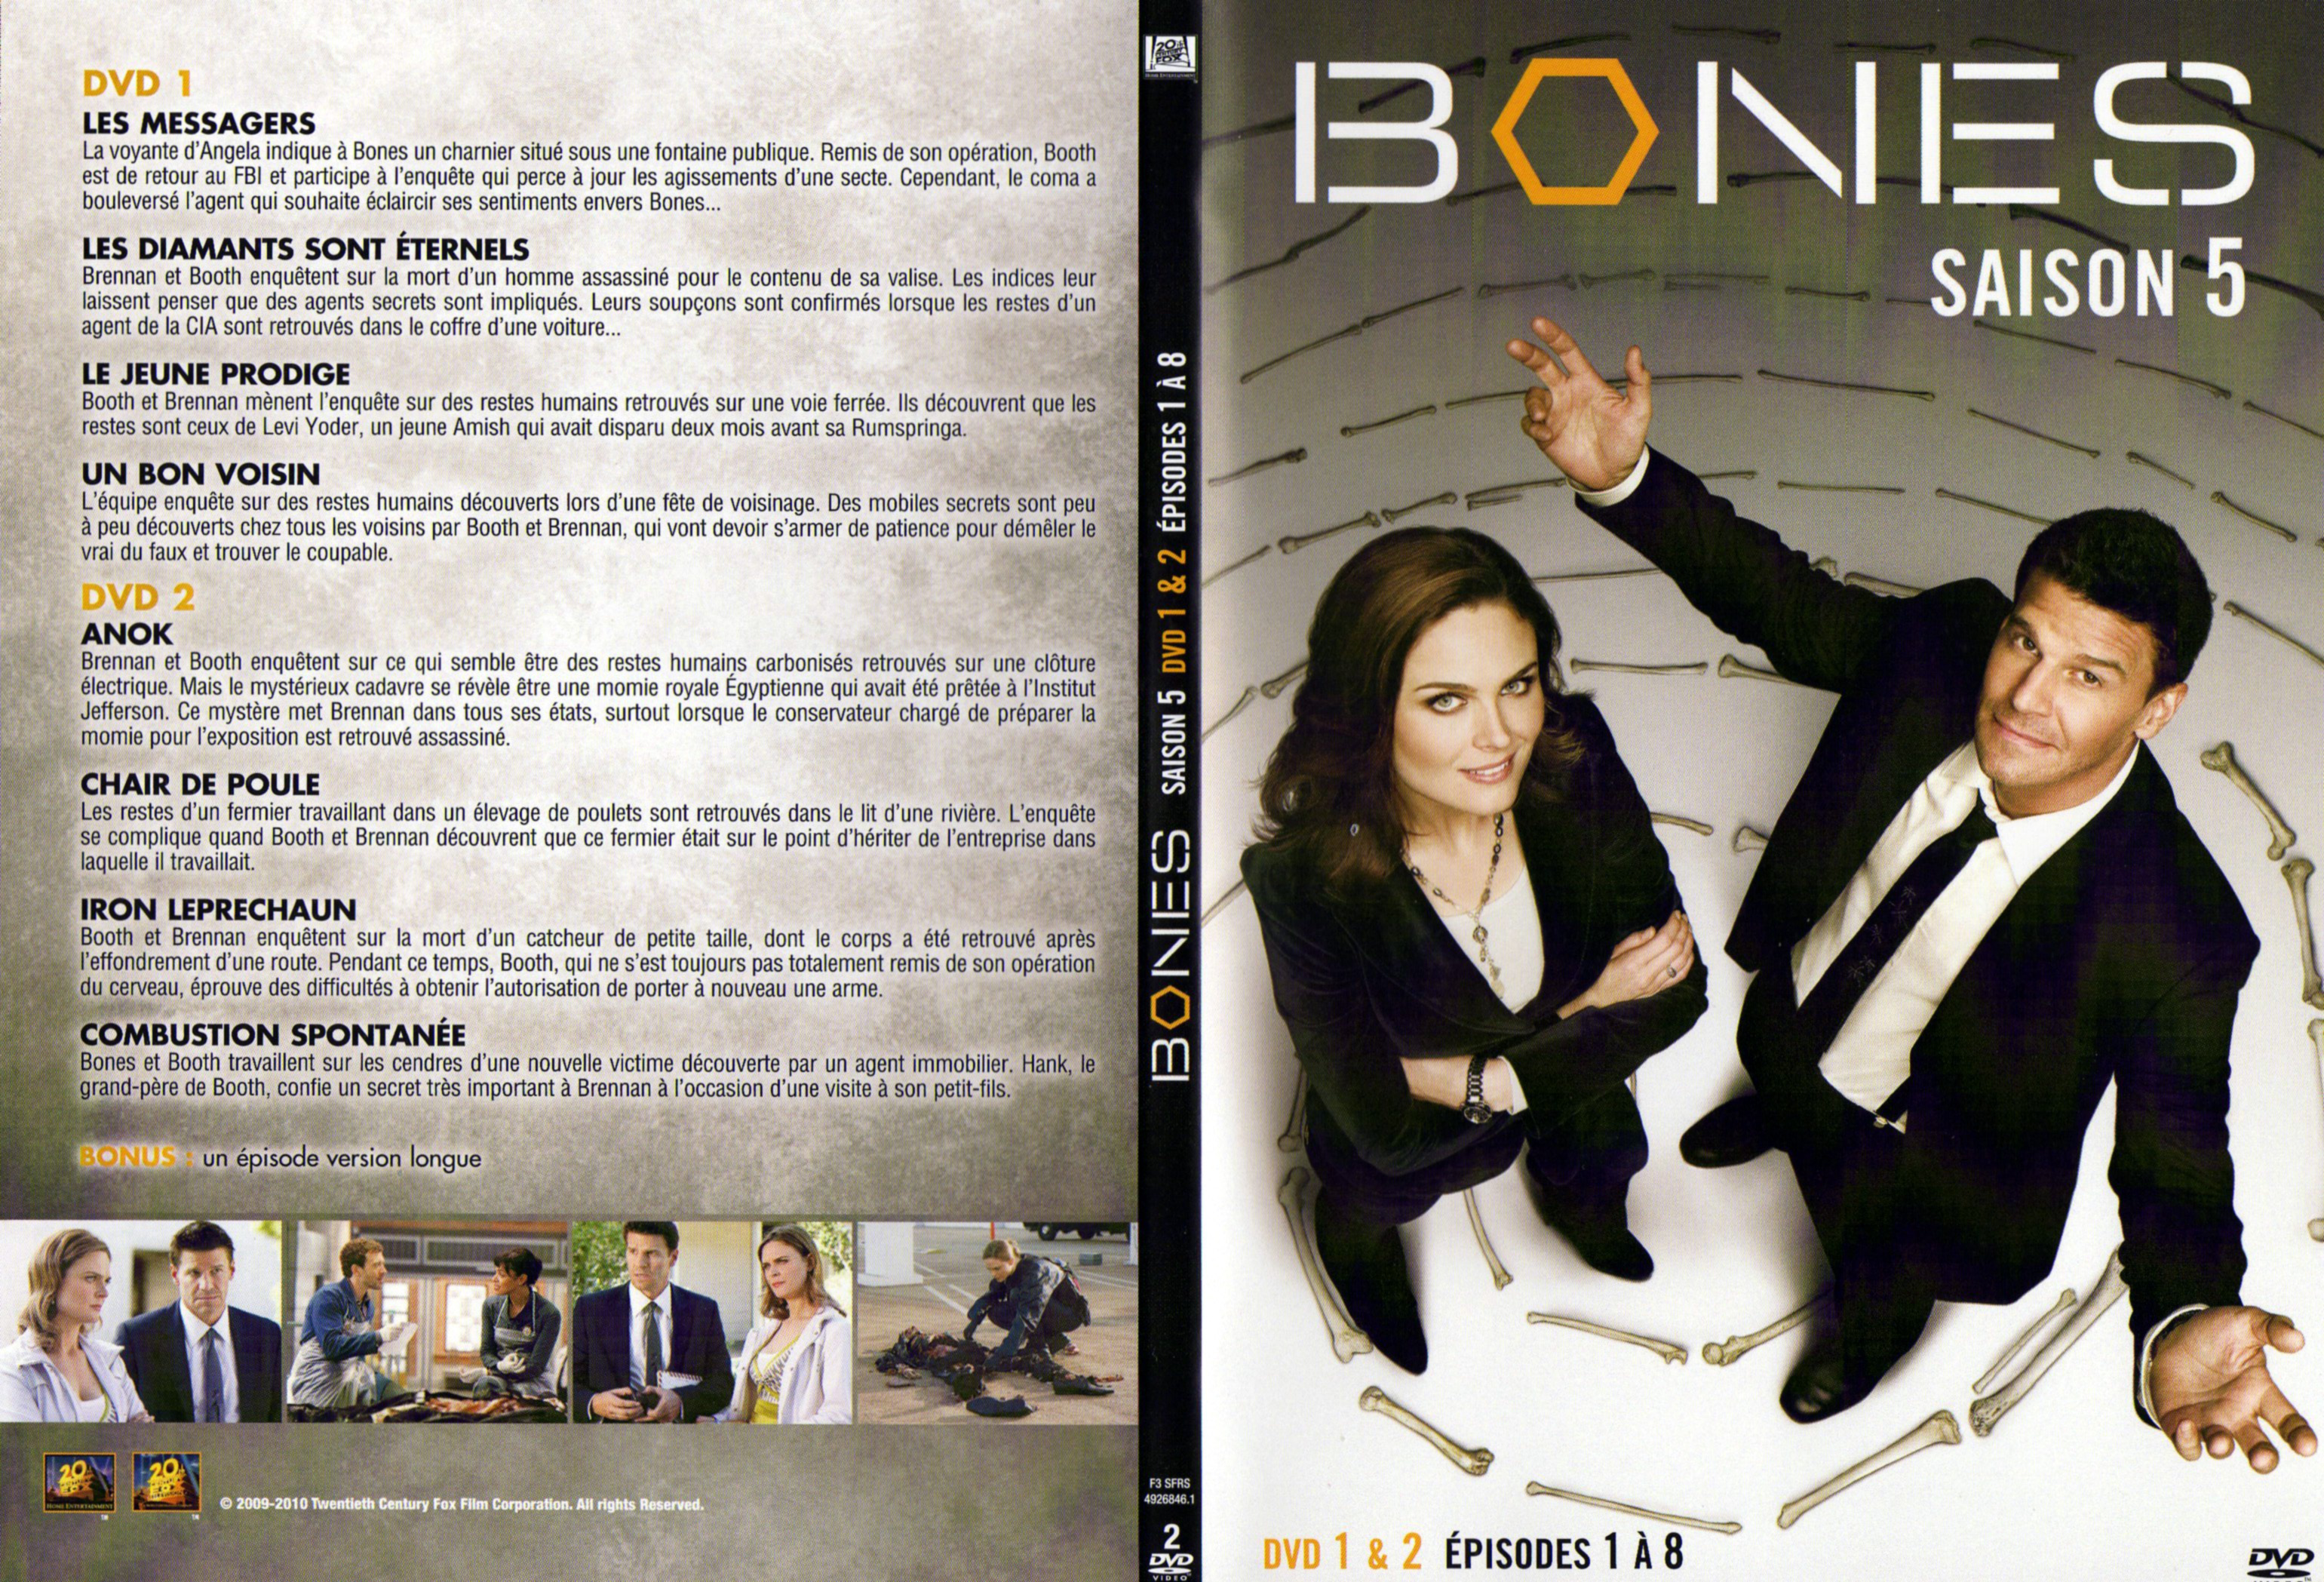 Jaquette DVD Bones Saison 5 DVD 1